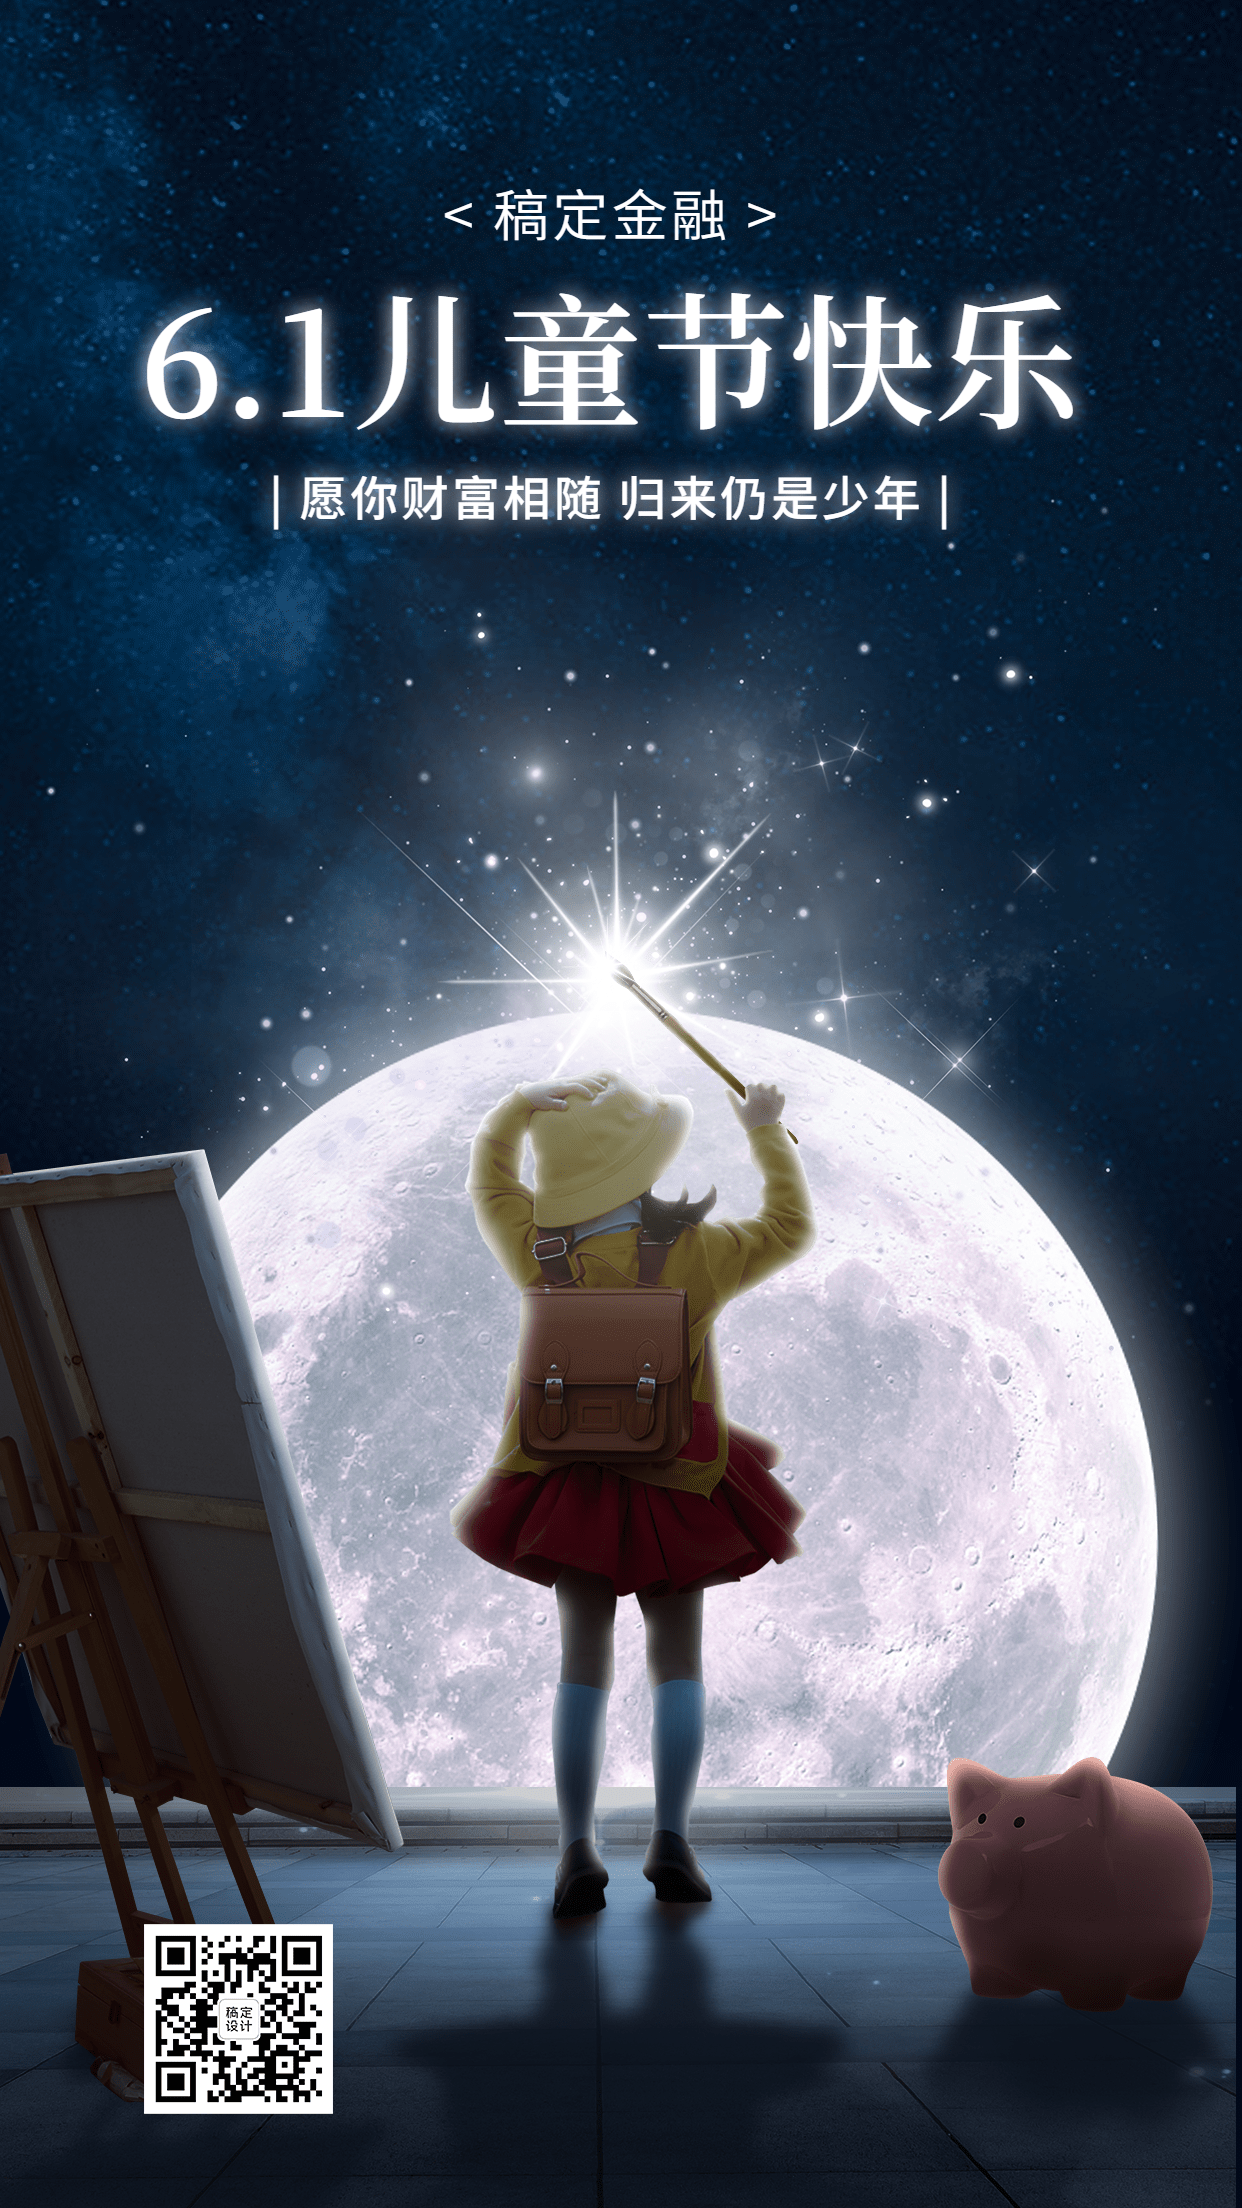 61儿童节金融保险节日祝福创意插画梦幻风手机海报